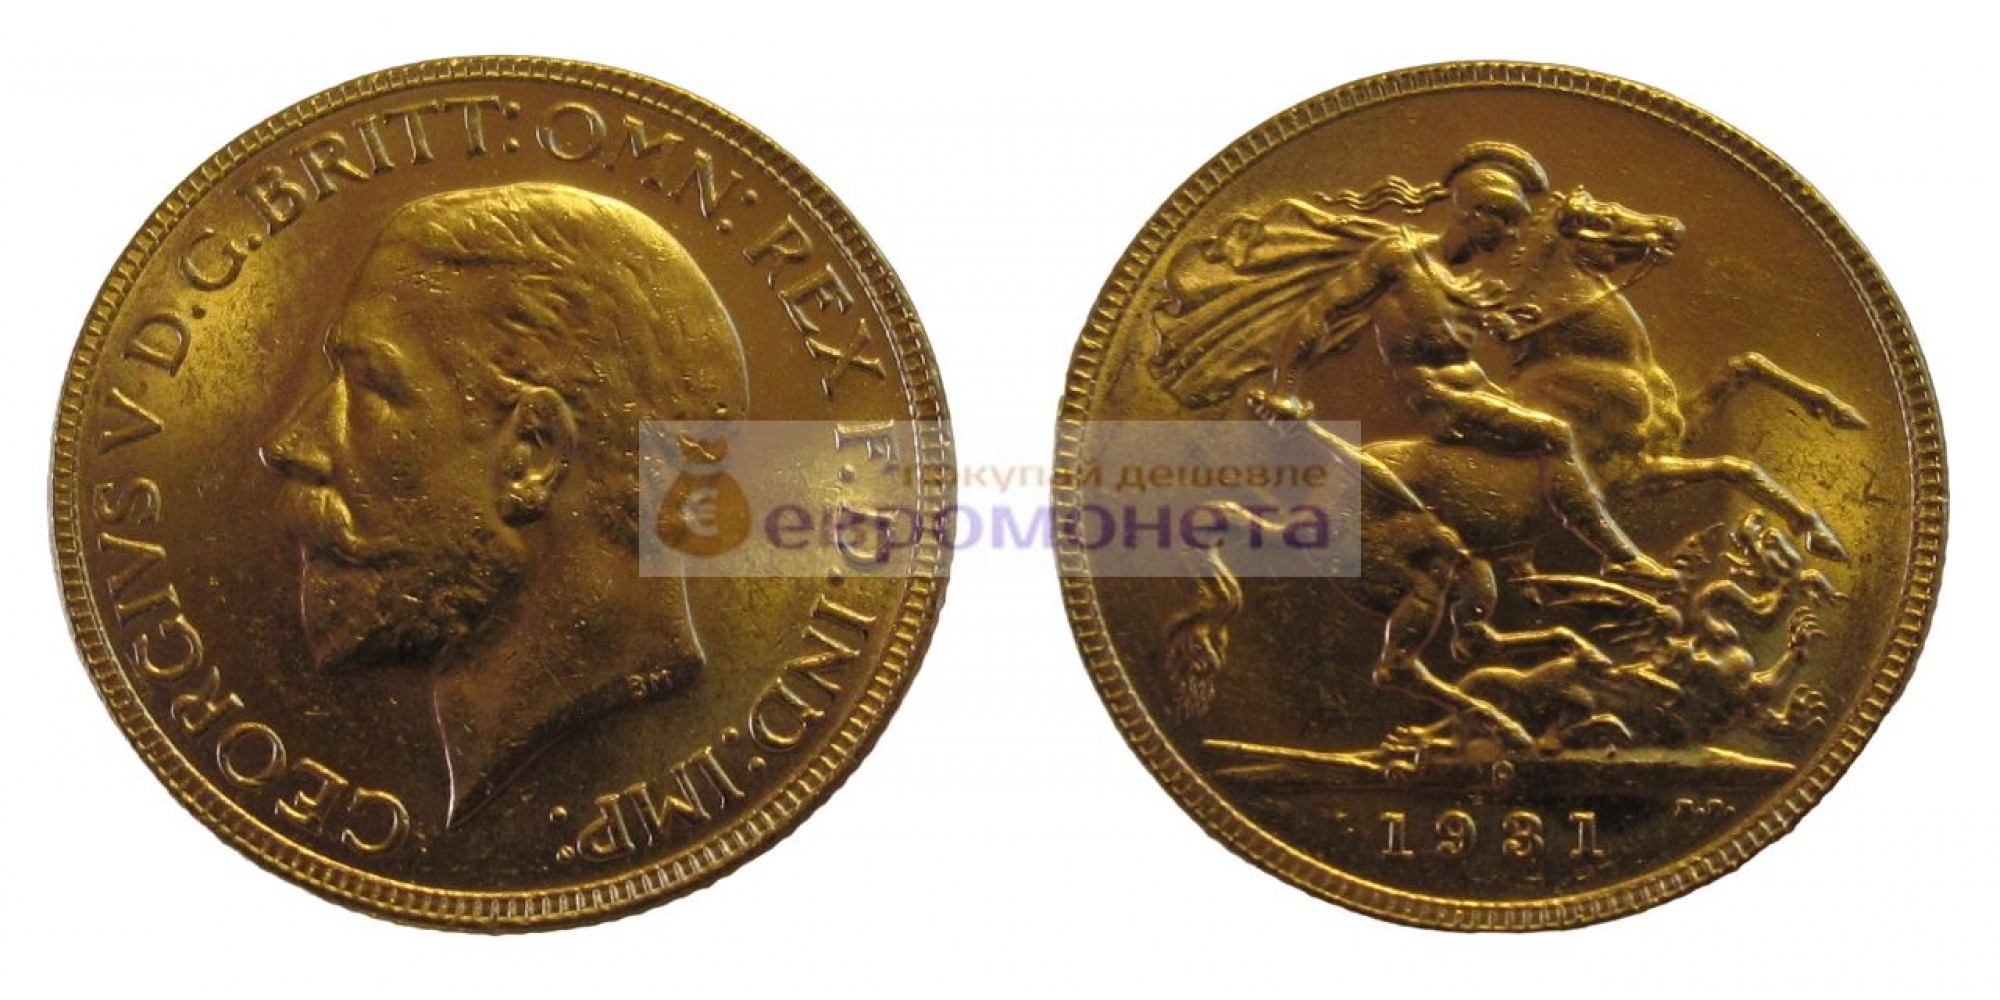 Австралия 1 соверен 1931 год. Король Георг V. Отметка монетного двора "P" - Перт. Золото.